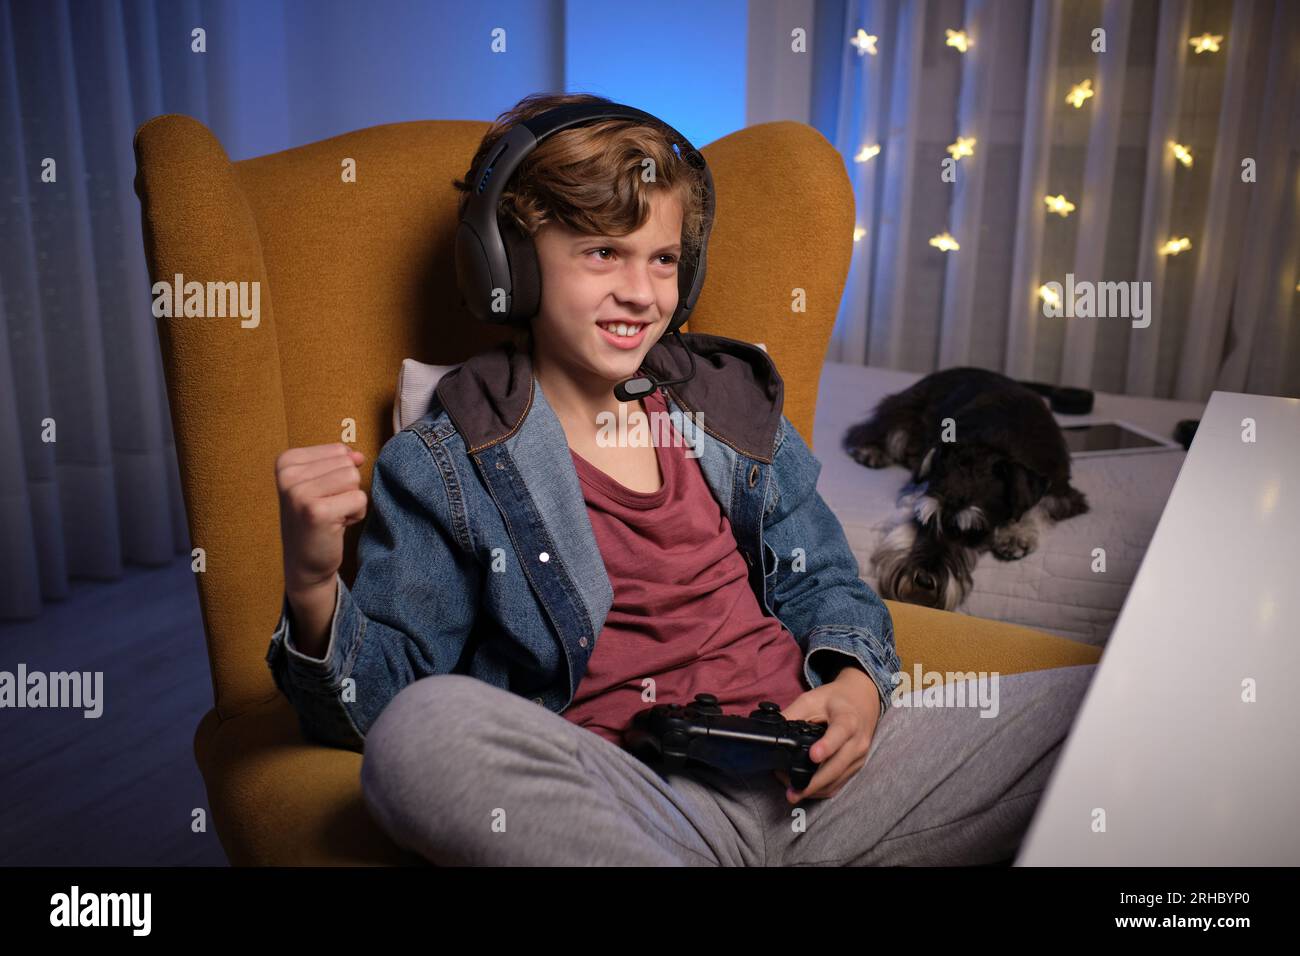 Positiver junger Junge im Headset sitzt auf einem bequemen Sessel mit Gamepad und feiert seine Leistung im Videospiel neben dem Bett mit dem Hund Stockfoto